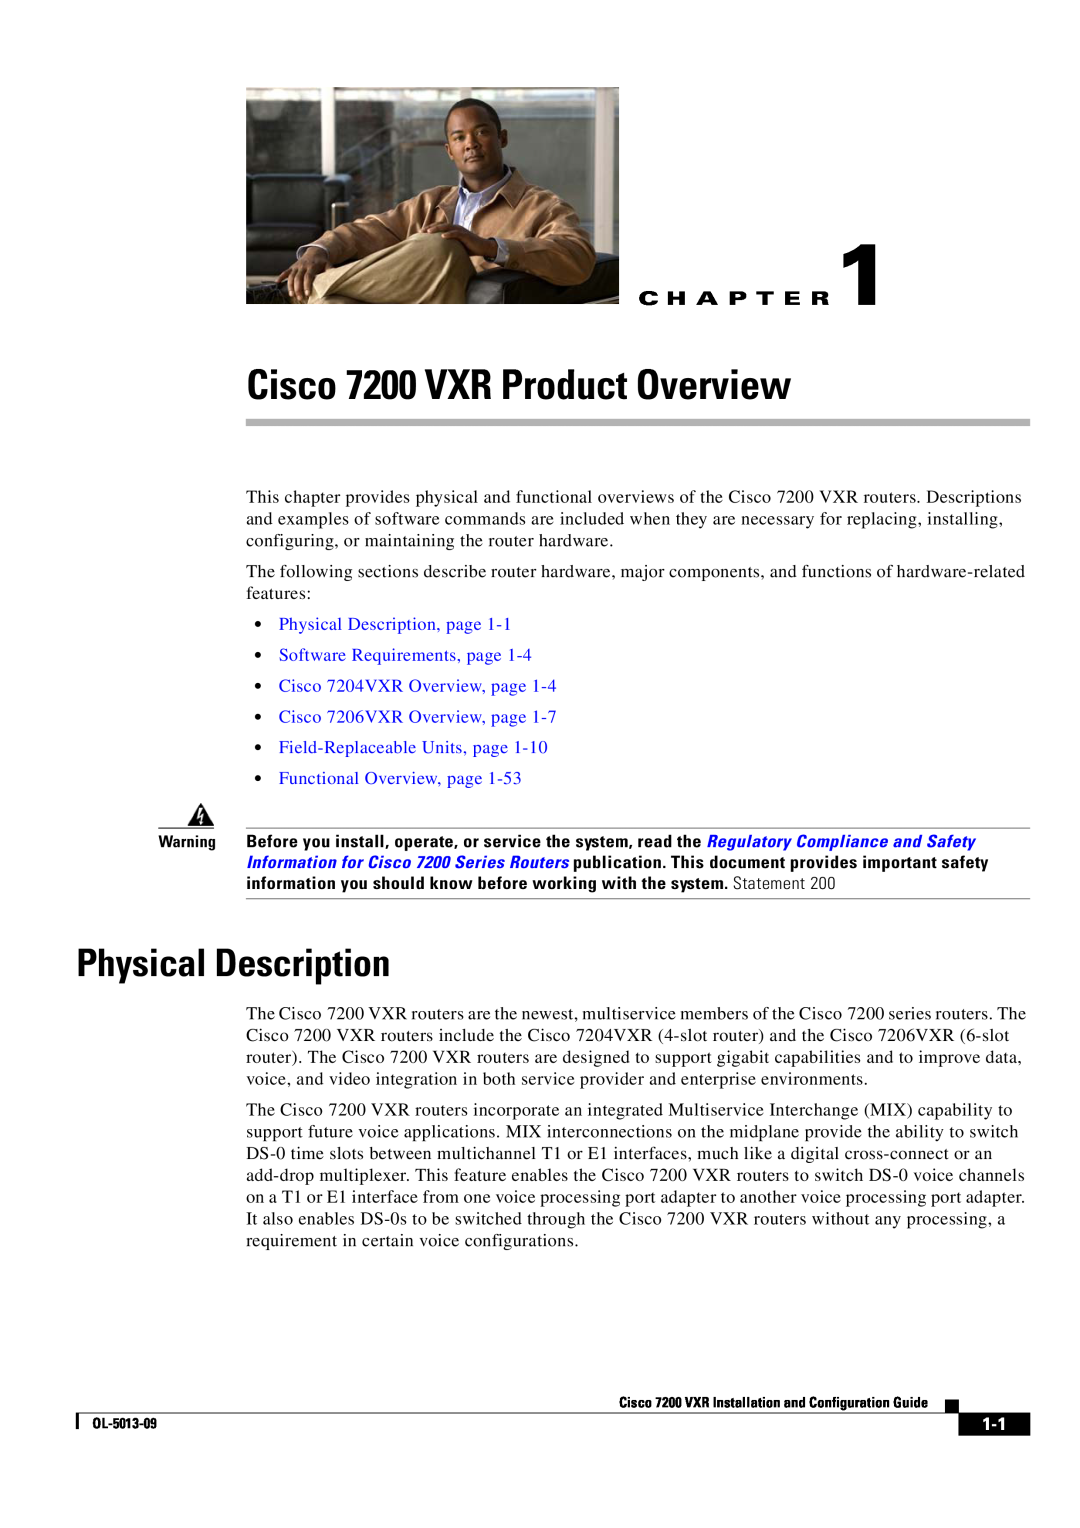 Cisco Systems manual Cisco 7200 VXR Product Overview, Physical Description, C H A P T E R 